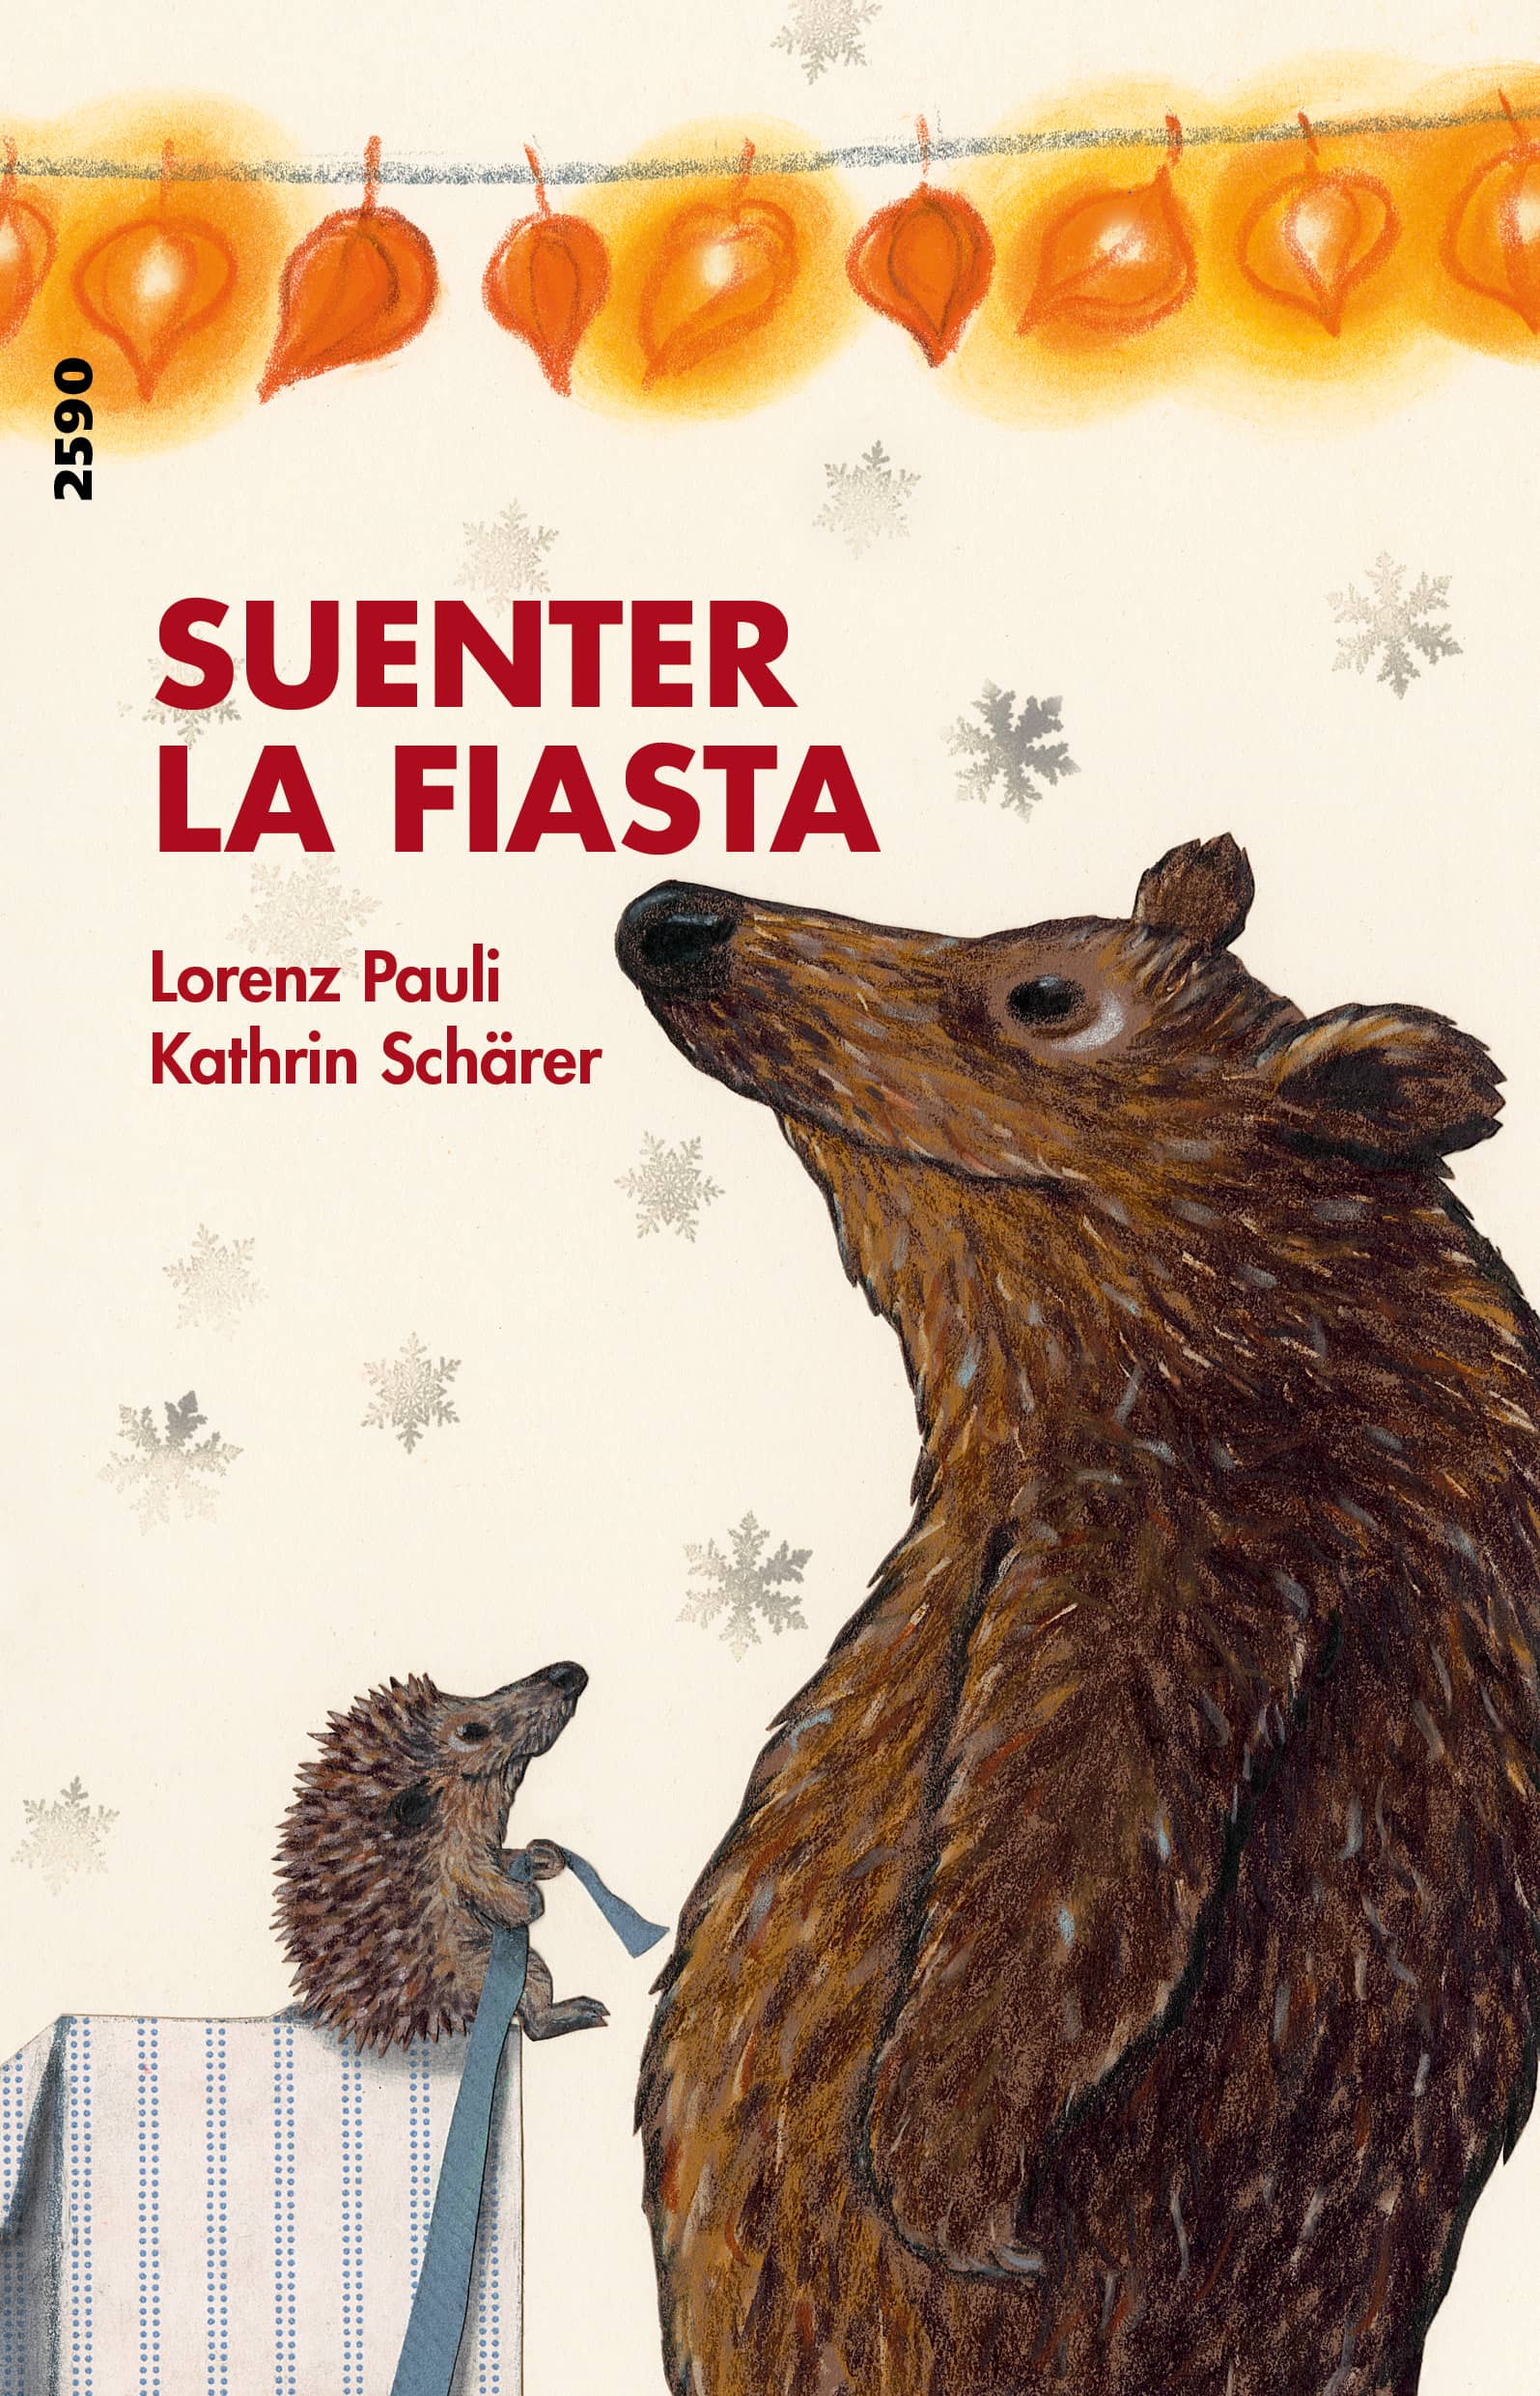 Suenter la fiasta, ein Kinderbuch von Lorenz Pauli, Illustration von Kathrin Schaerer, SJW Verlag, Monate, Jahreszeiten